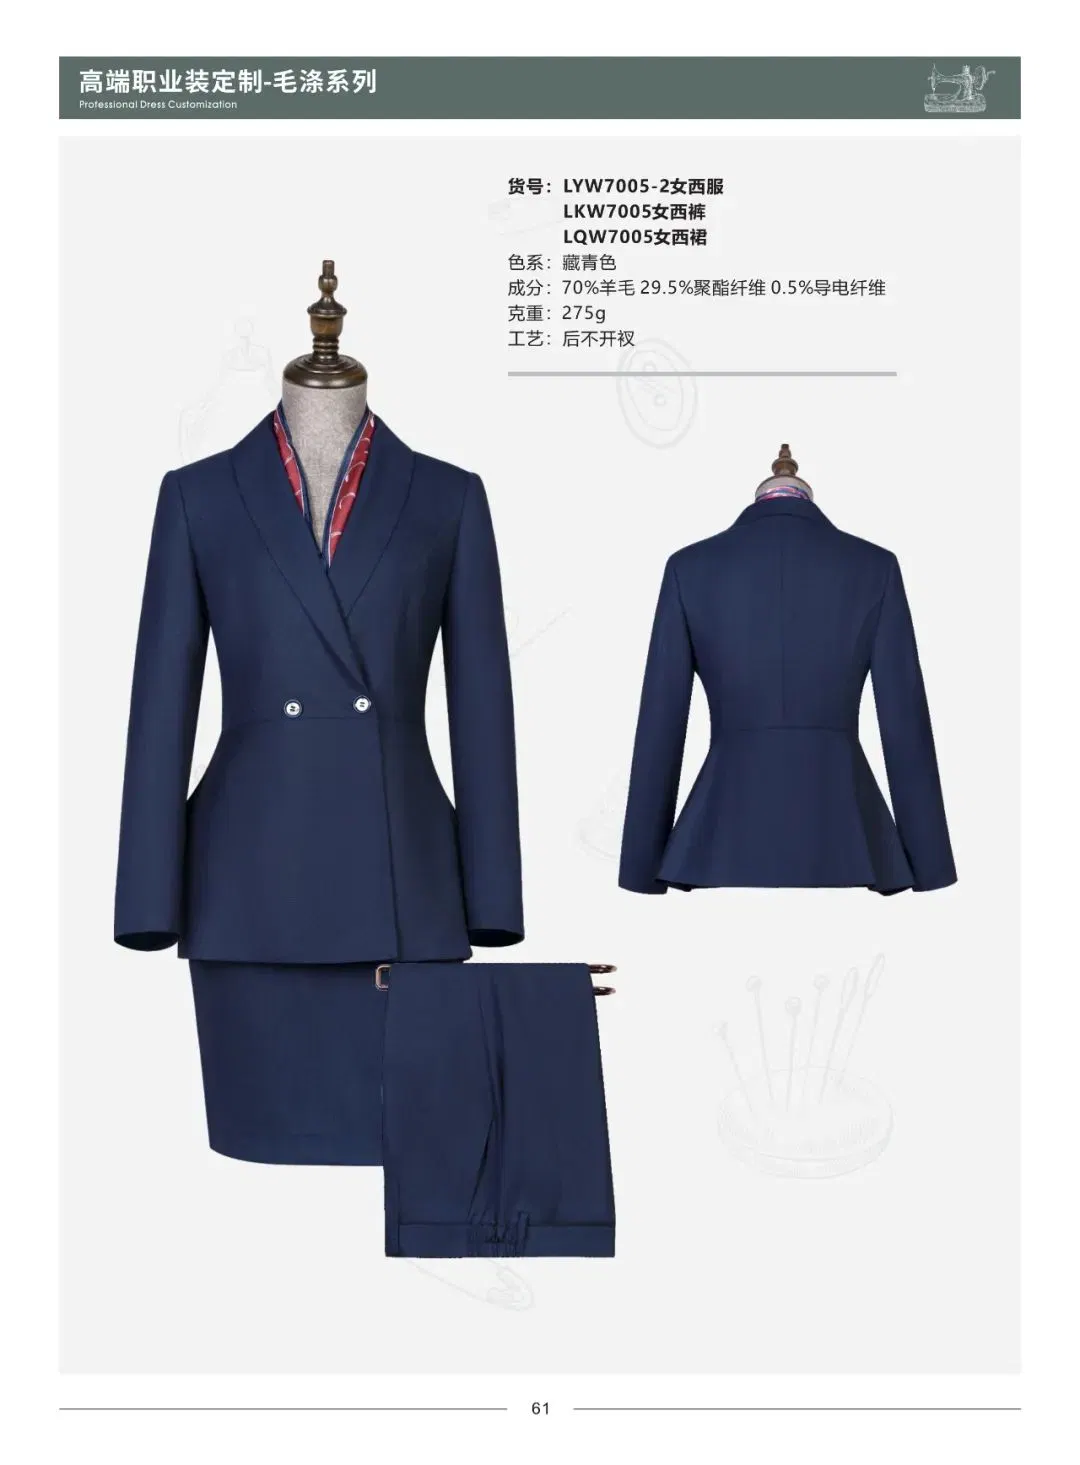 Apparel Fashion Men Business Suit